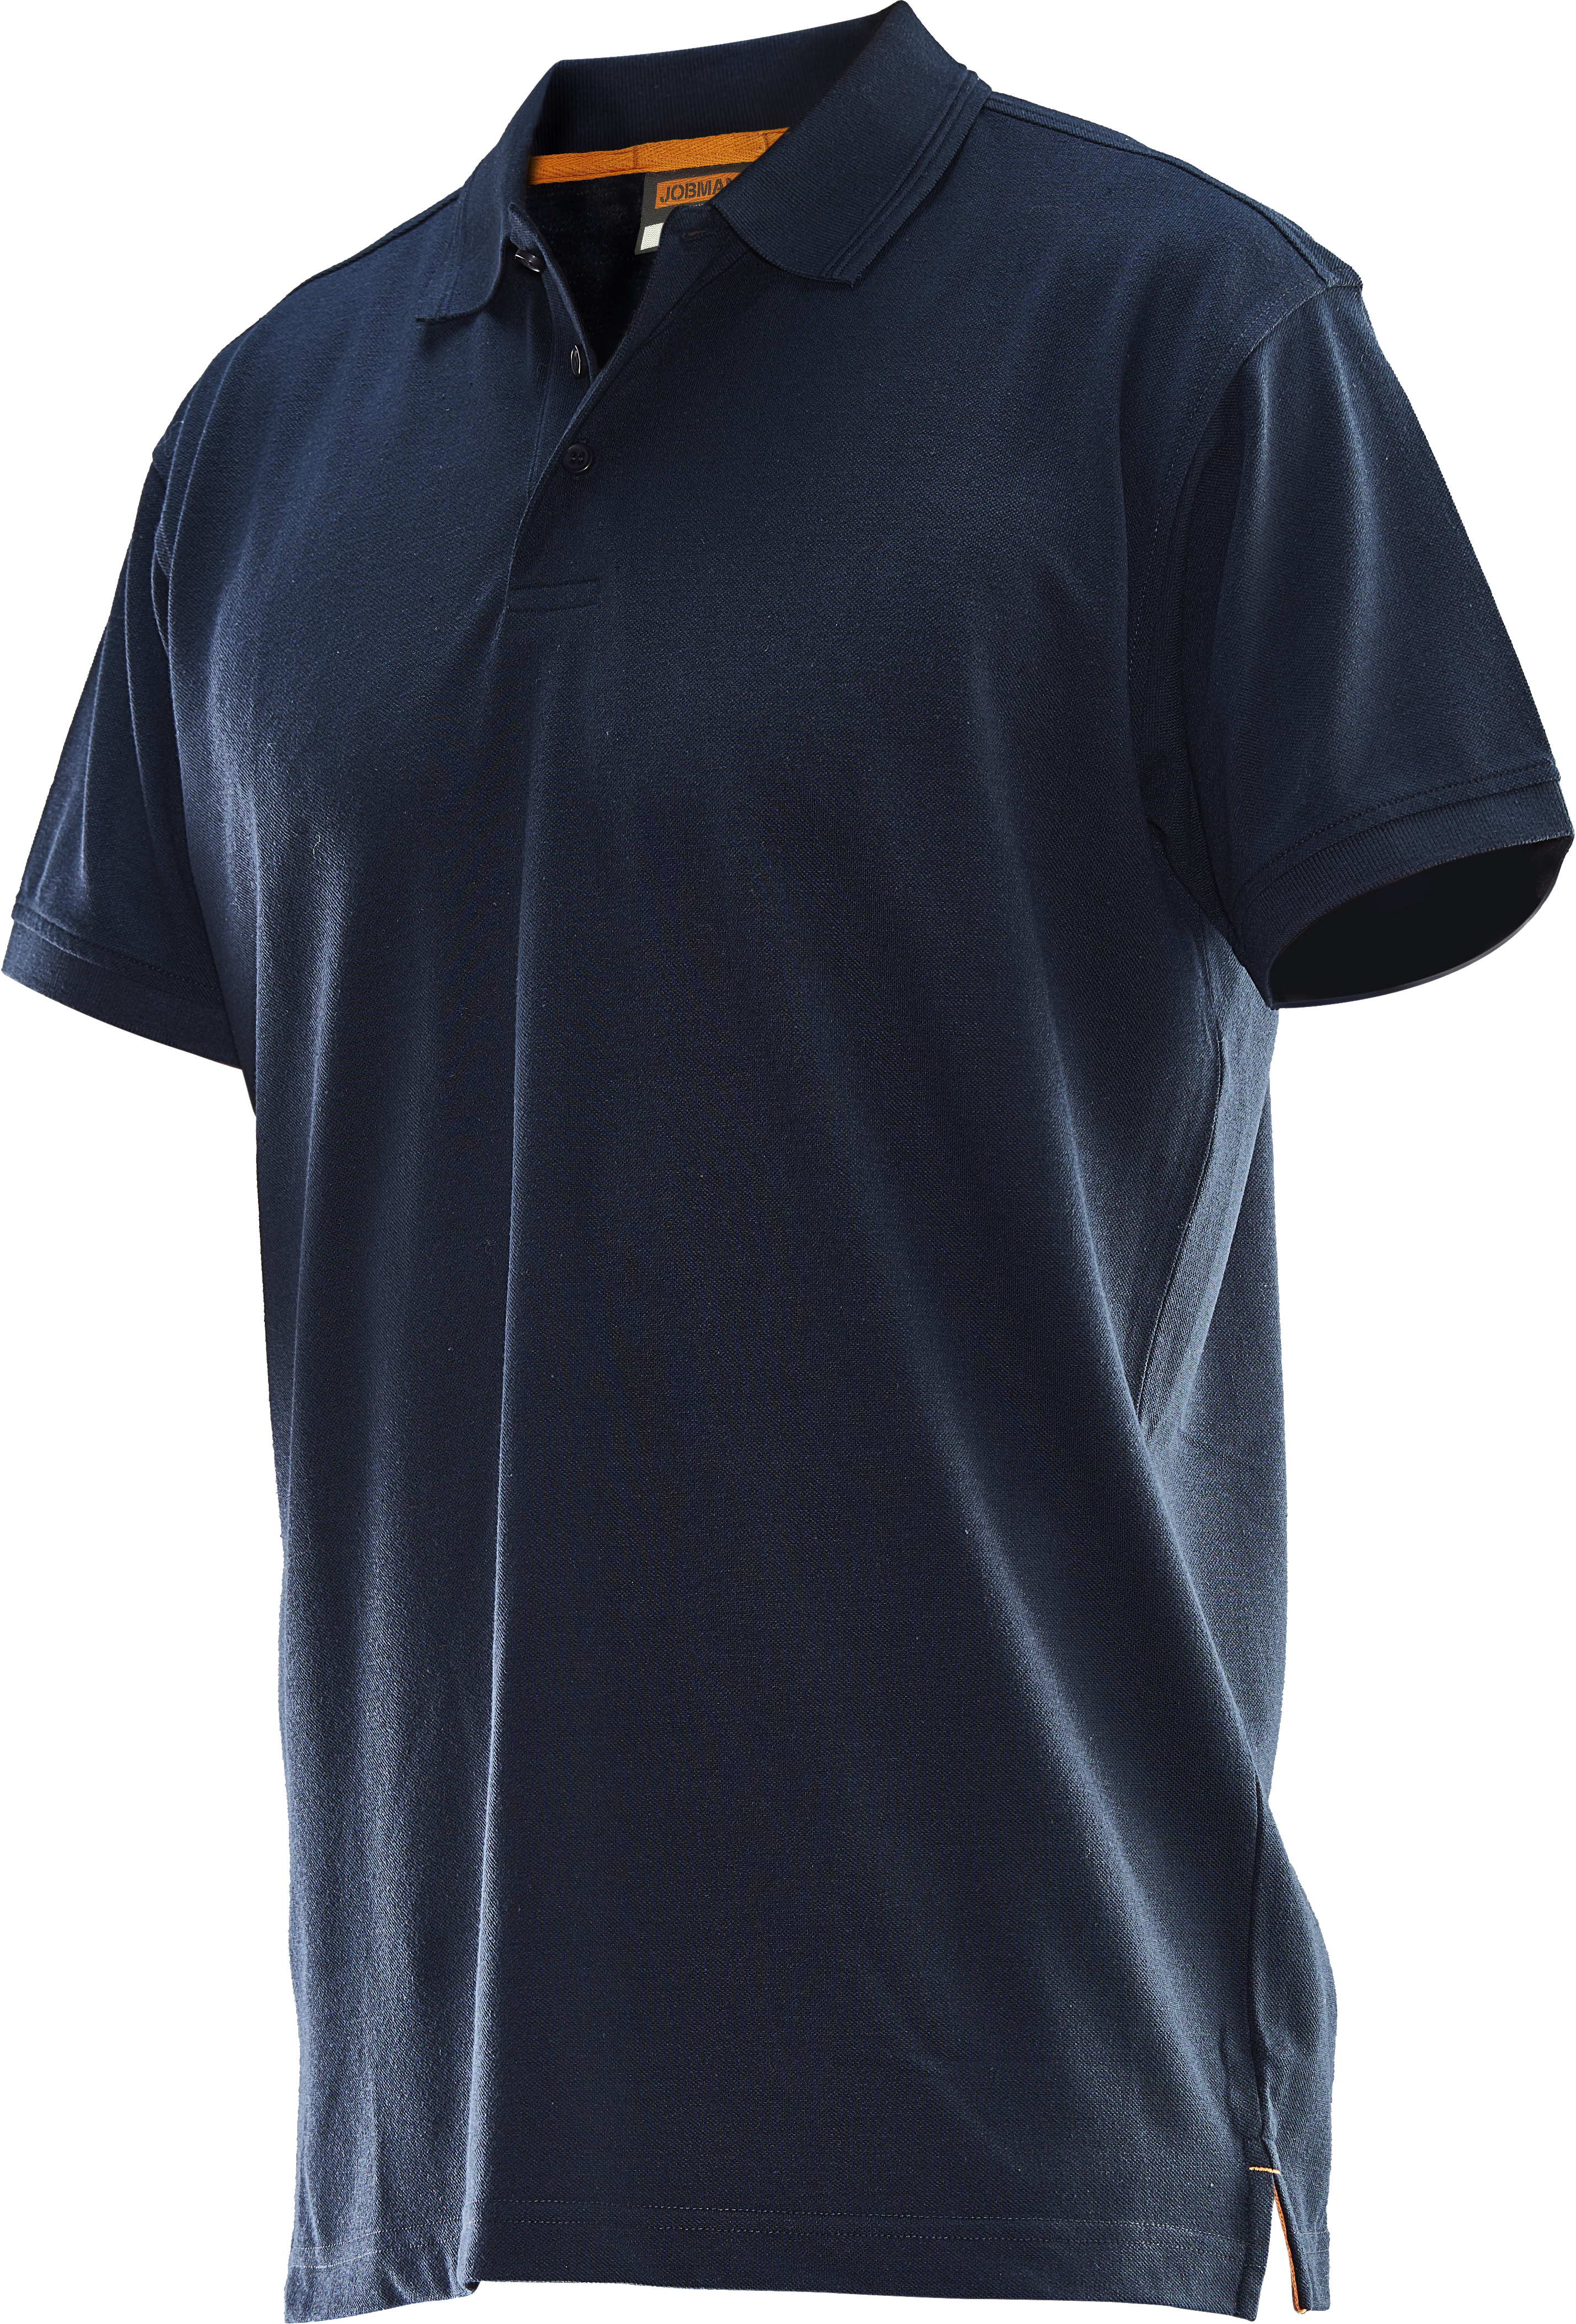 5564 T-shirt polo XL bleu marine